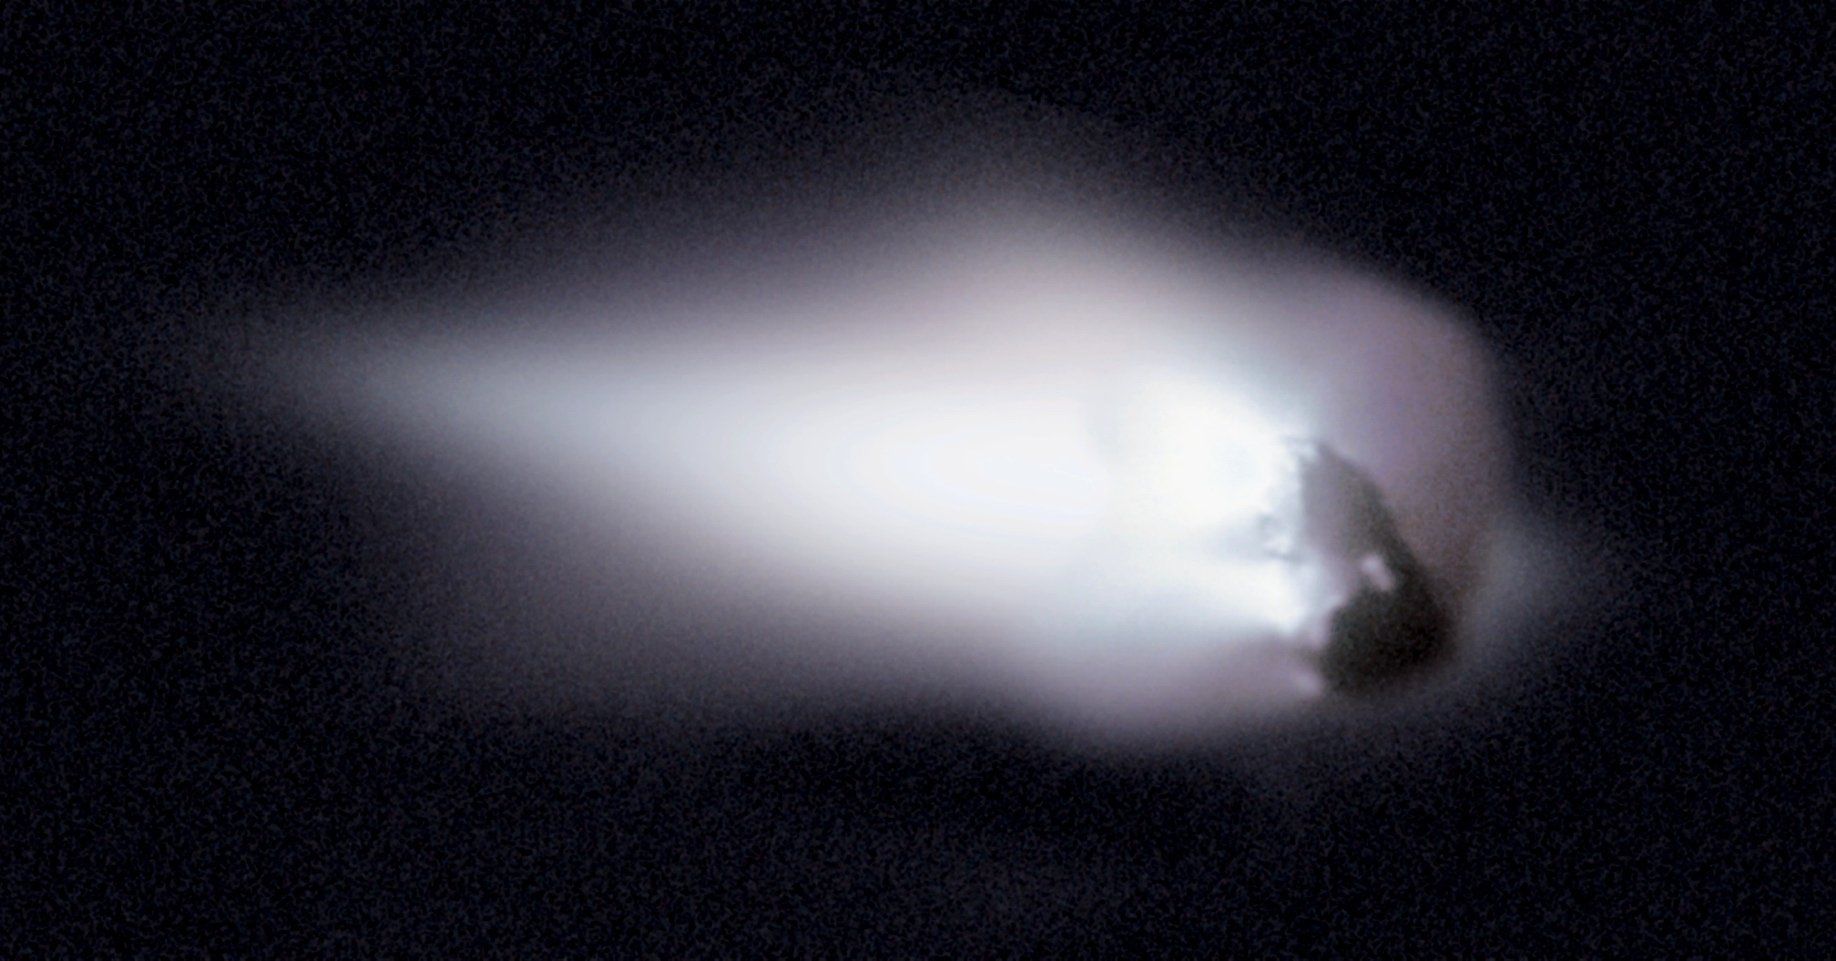 Haleja komētas kodols un to aptverošā koma